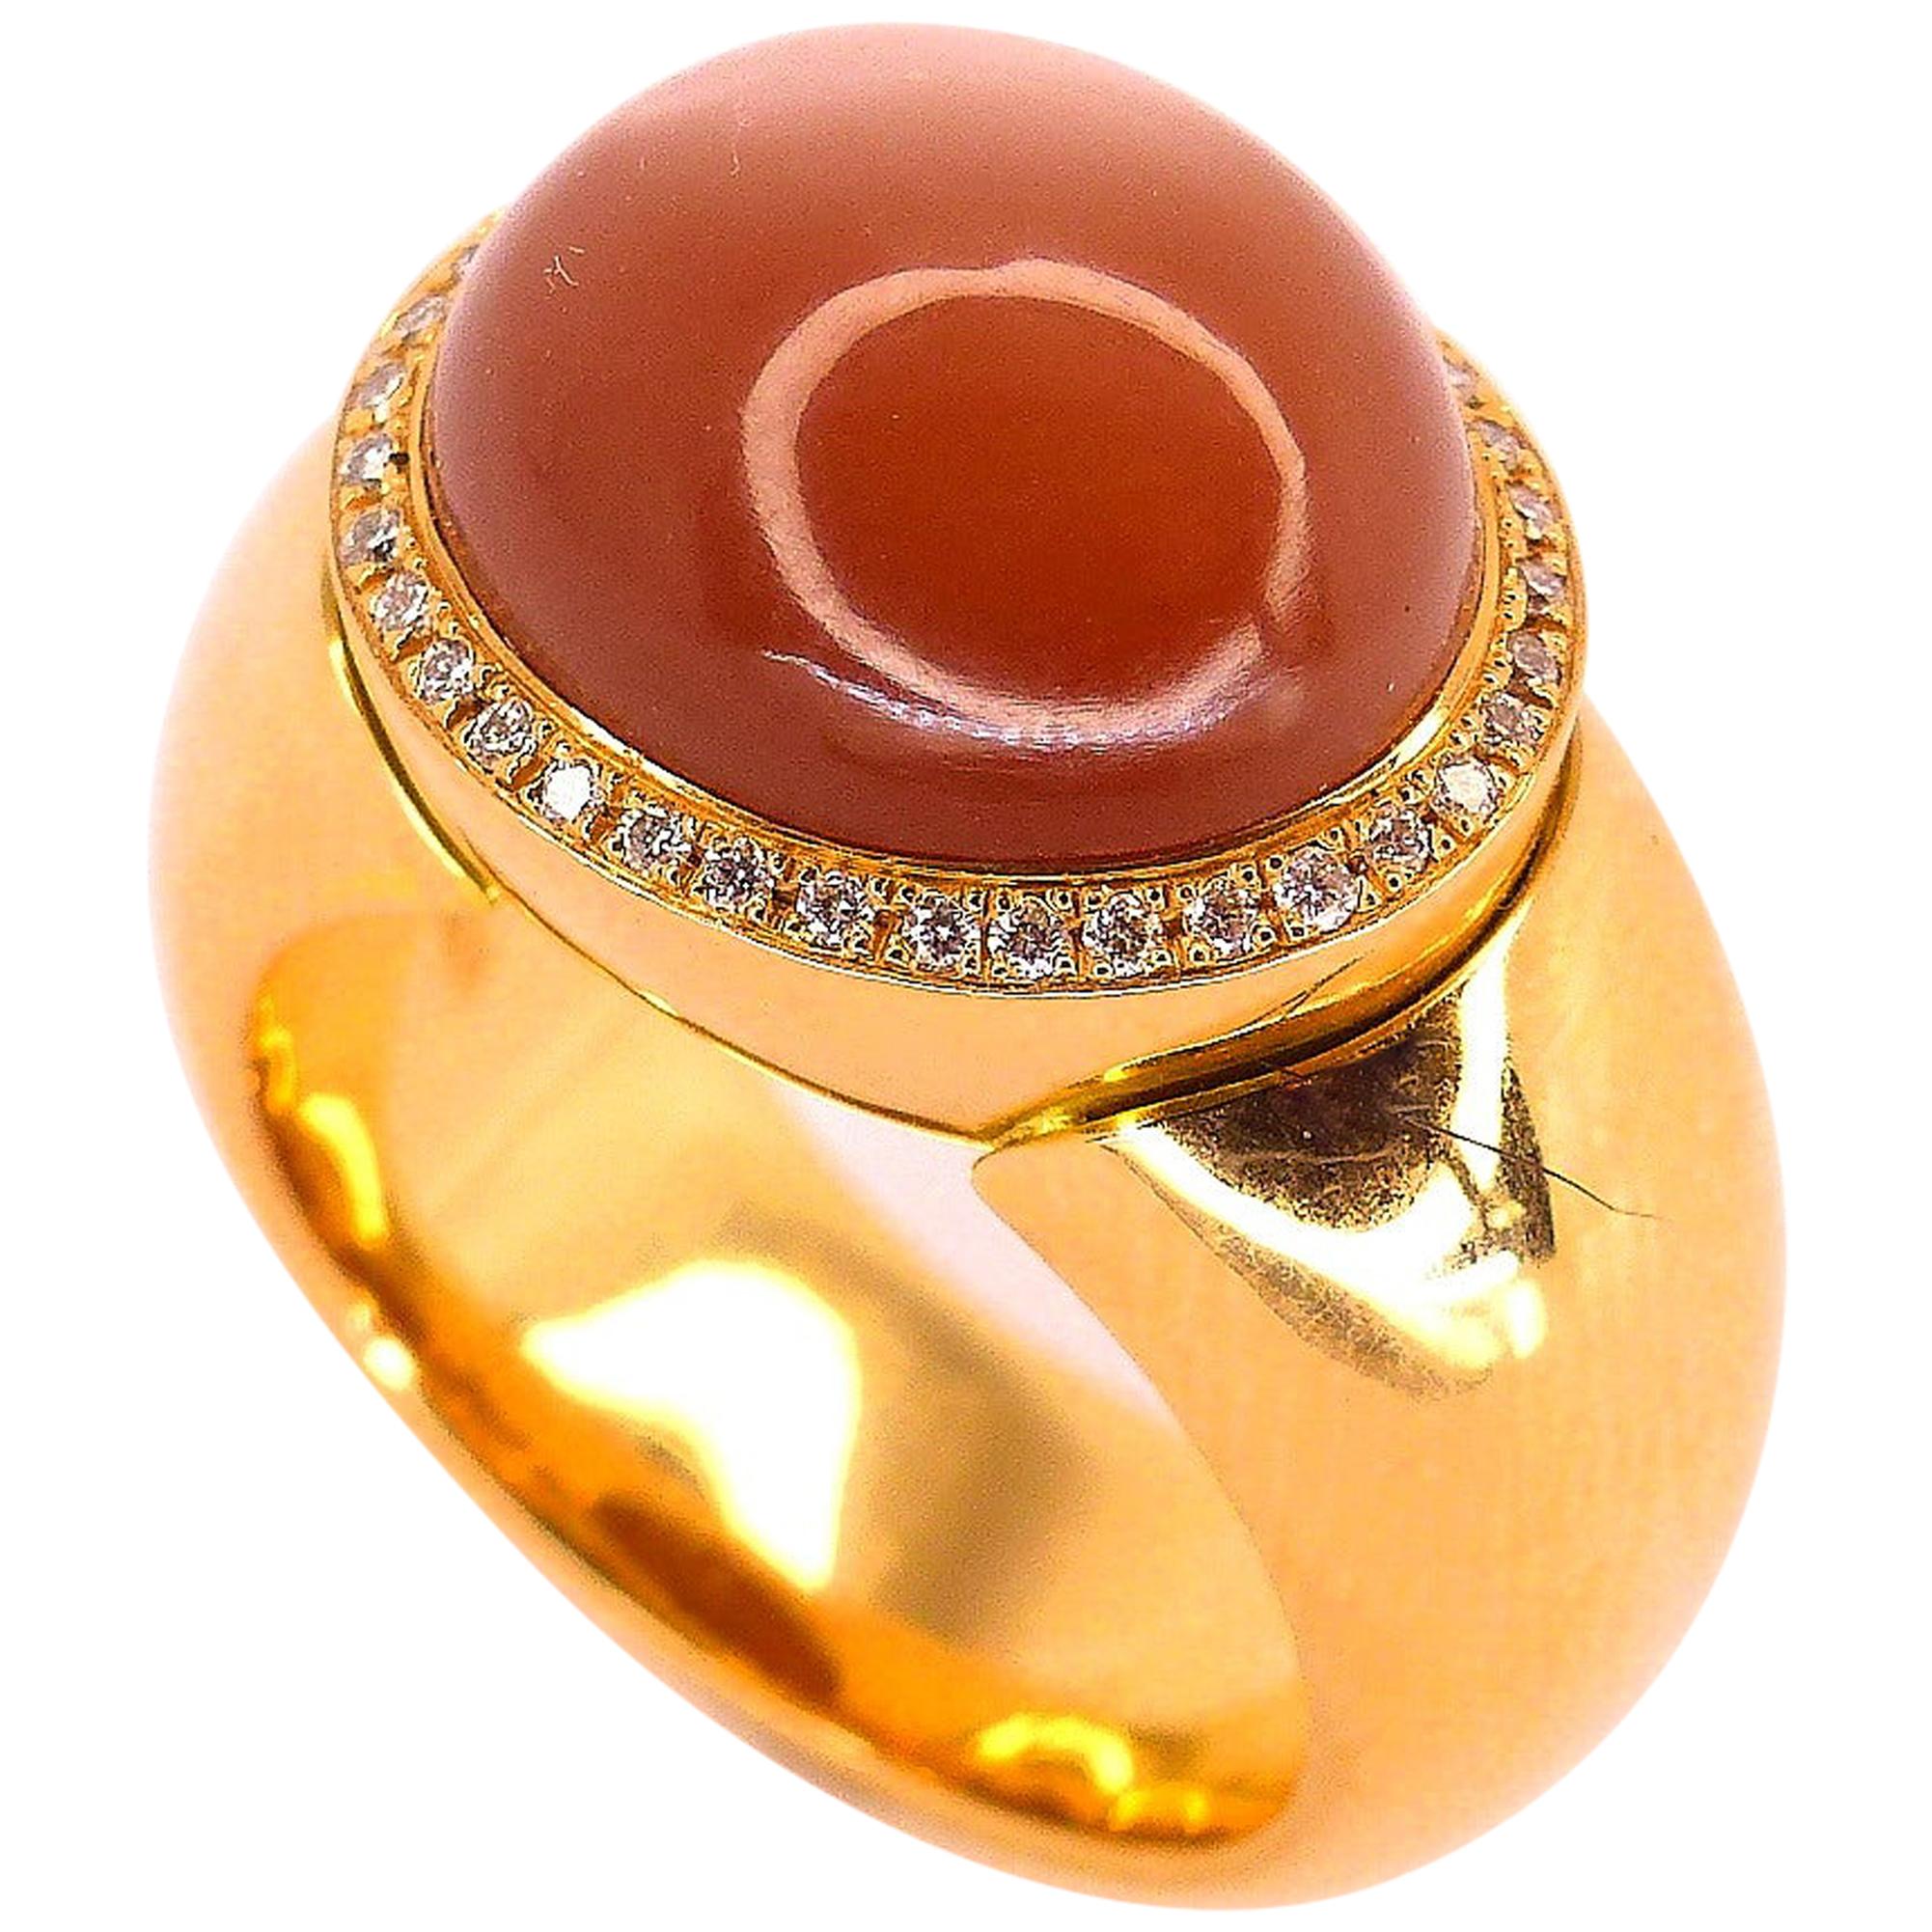  Bague en or rose avec 1 pierre de lune brune ovale de 14 x 12 mm et 42 diamants.